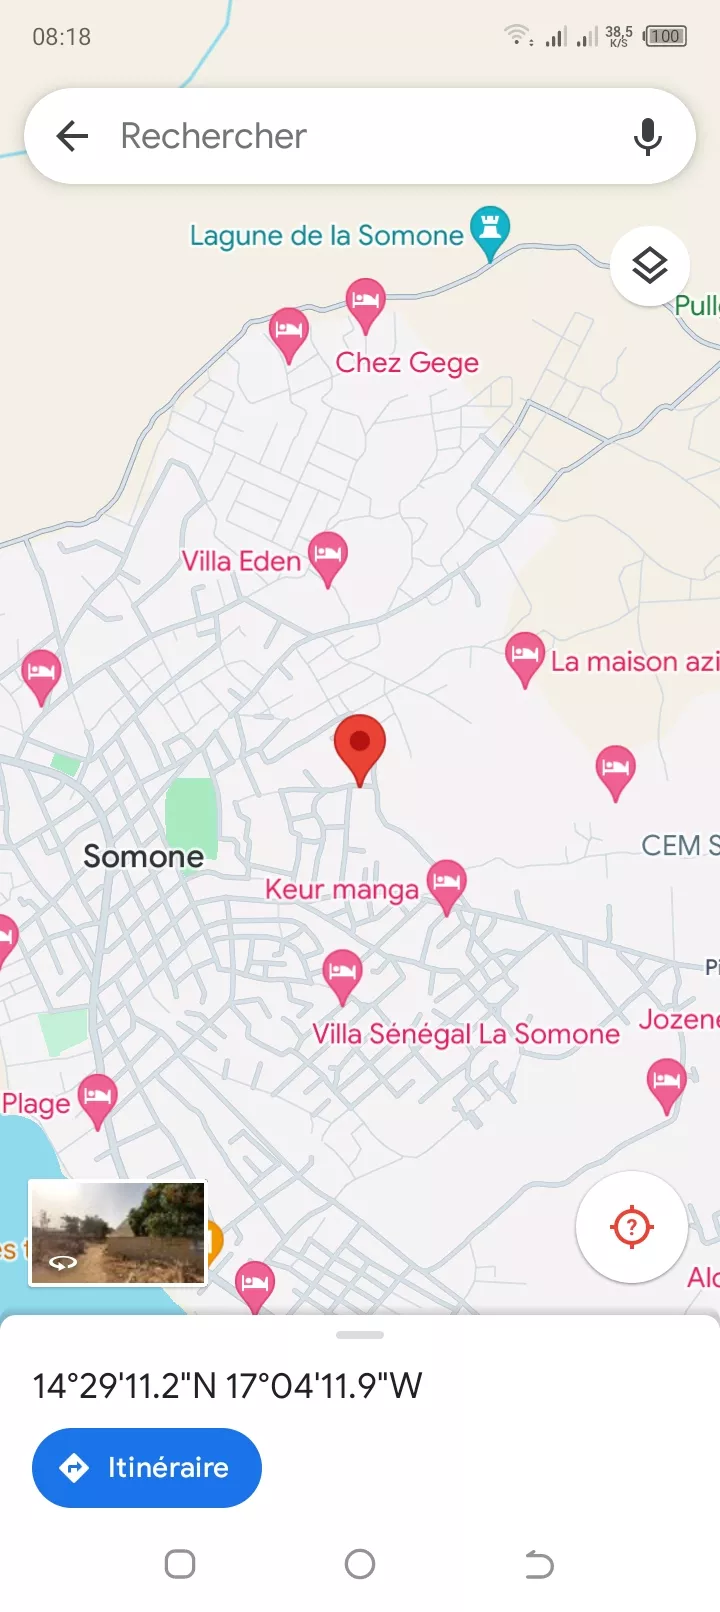 Terrain 300 mètres carrés à vendre à la Somone à 20000000 - Petites annonces gratuites - Achat et vente à Mbour, Sénégal